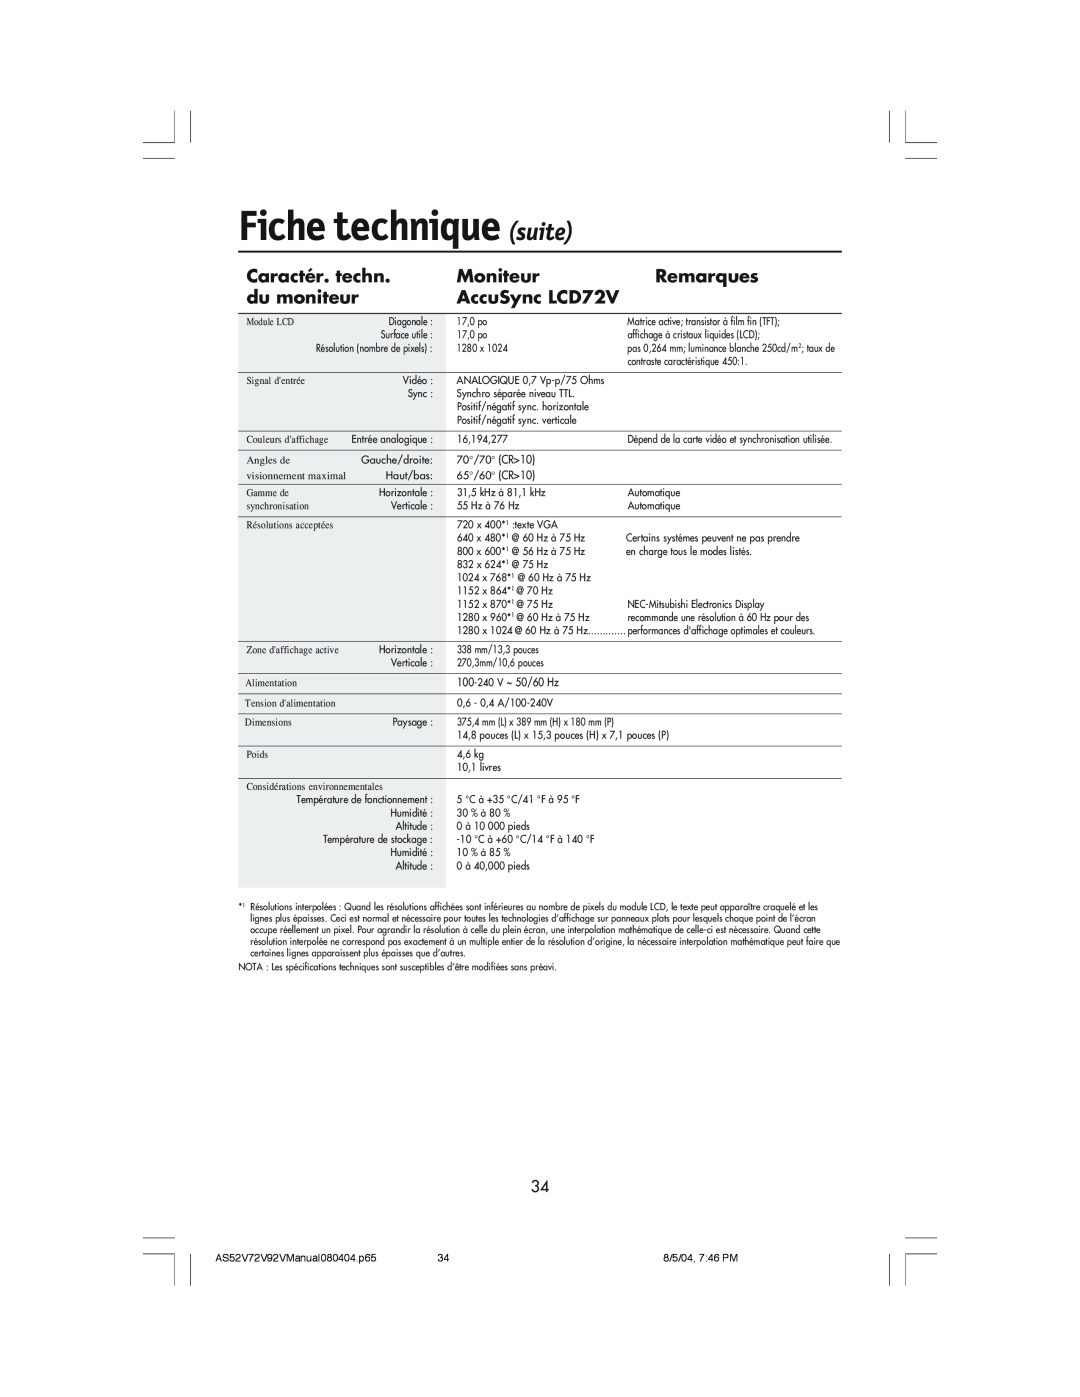 NEC LCD52V manual Fiche technique suite, Caractér. techn, Moniteur, Remarques, du moniteur, AccuSync LCD72V 